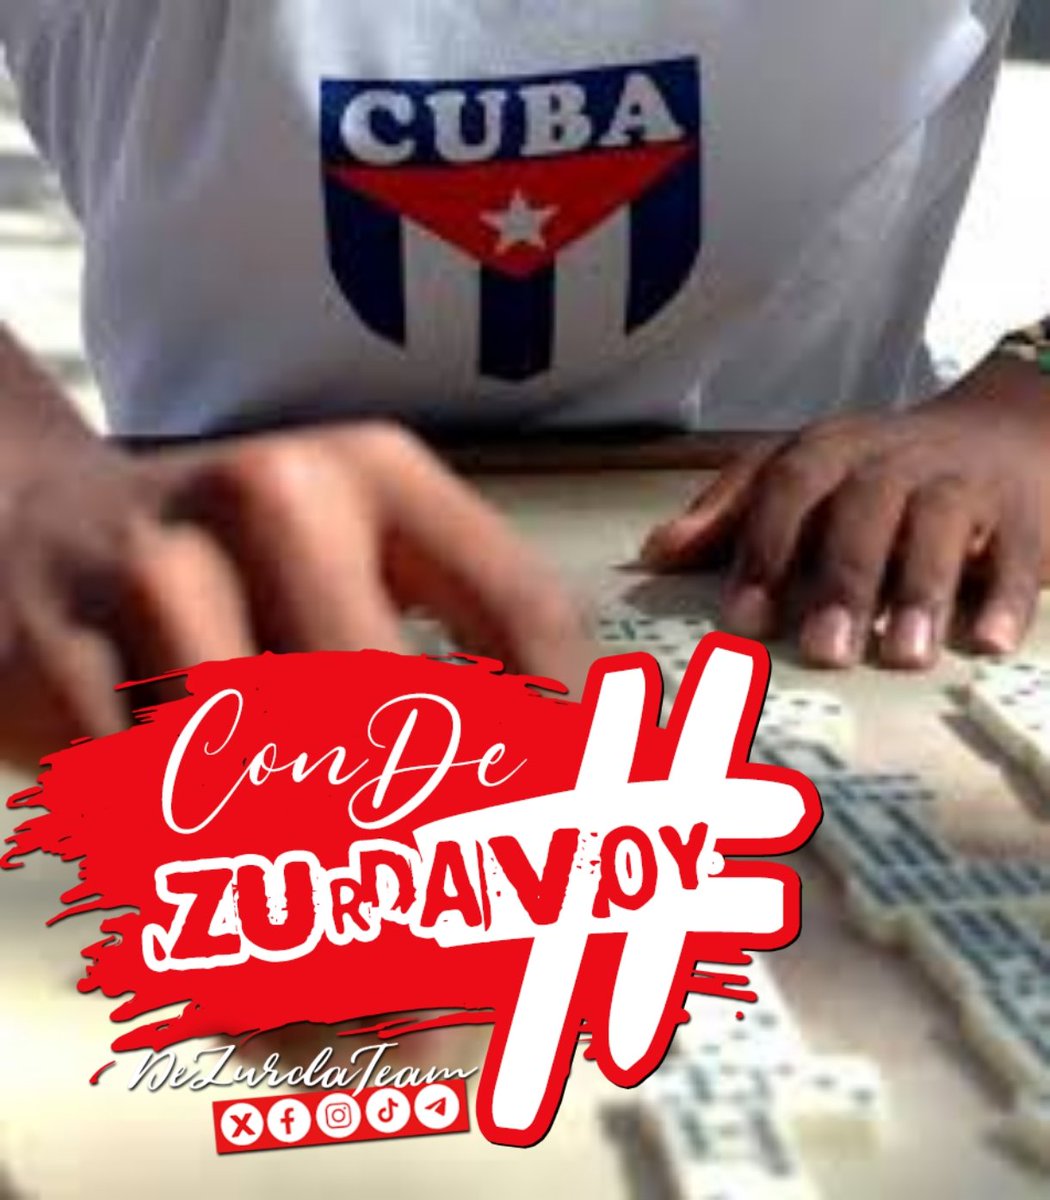 @DeZurdaTeam_ @7Mararodriguez @FloryCantoX @agnes_becerra @AdrianaRojasQba @AlasDeAmorCuba @Amanecerabz @AriagnaPavonG @zurdoBo7 @CeciCuba 👉 #ConDeZurdaVoy 🇨🇺 este fin de semana al trabajo voluntario y después a jugar Dominó 🤳 Unidos X Cuba , a la Zurda se formó #IslaRebelde 📍 #DeZurdaTeam